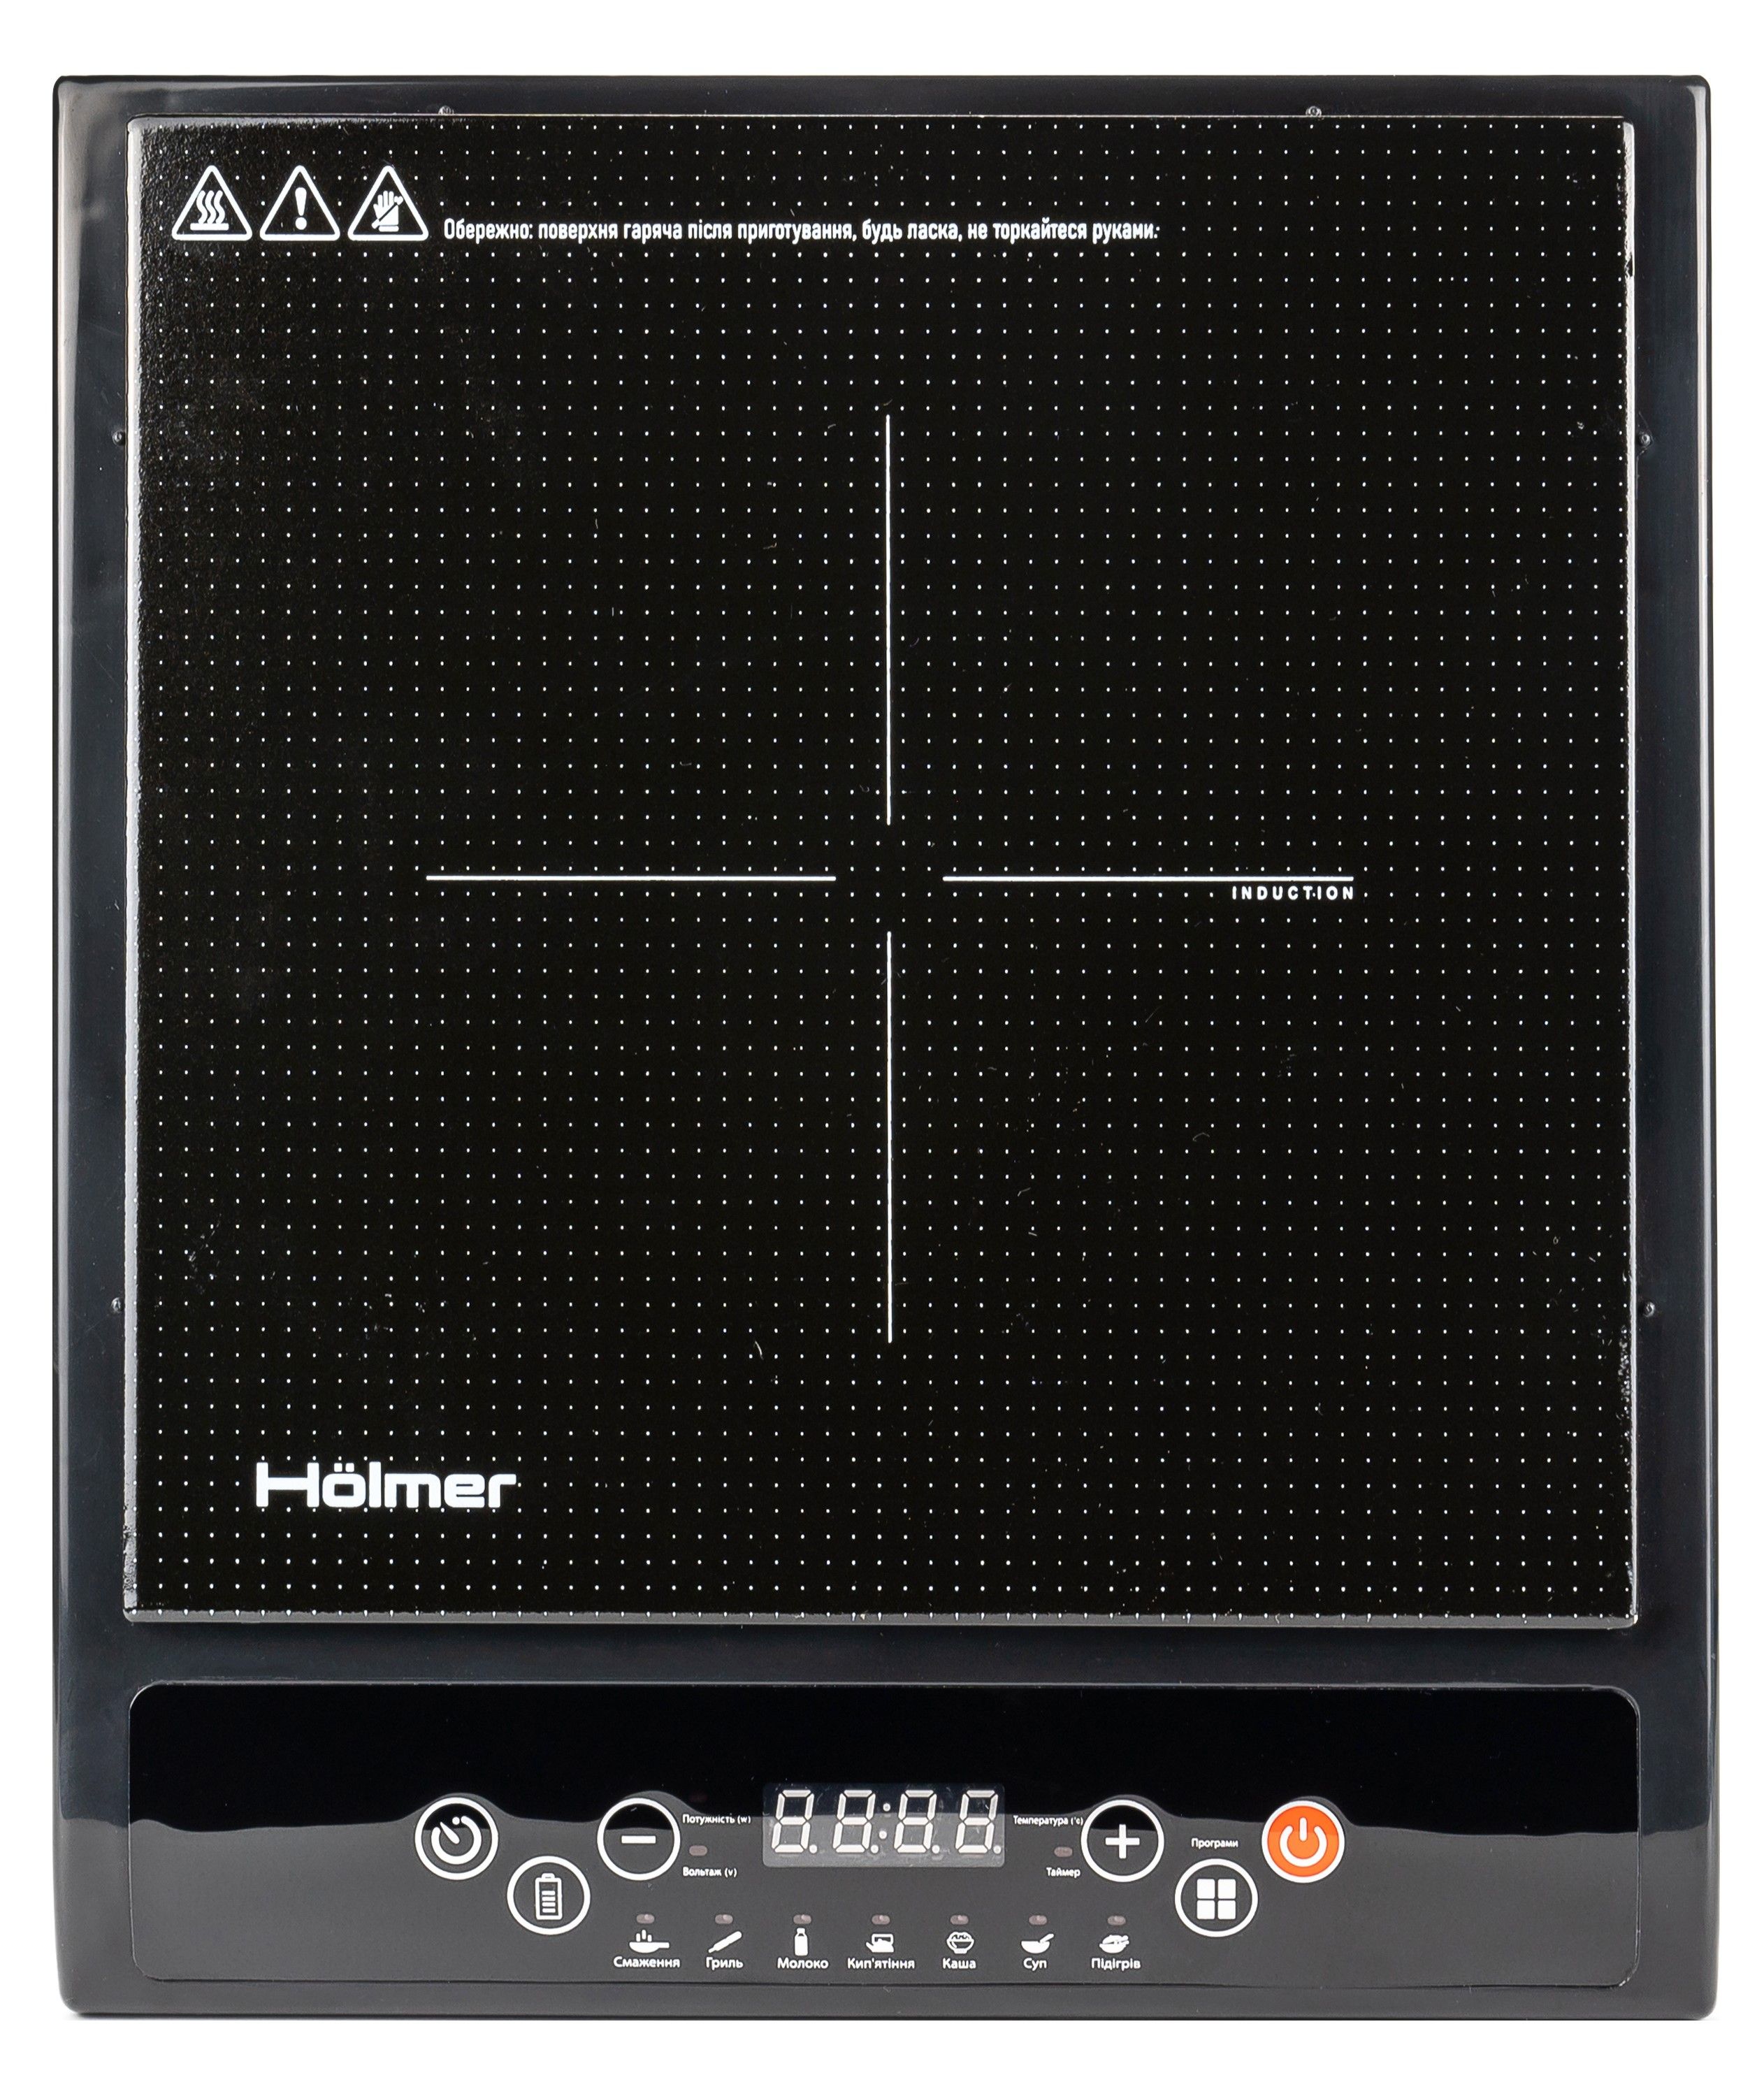 Holmer HIP-252C